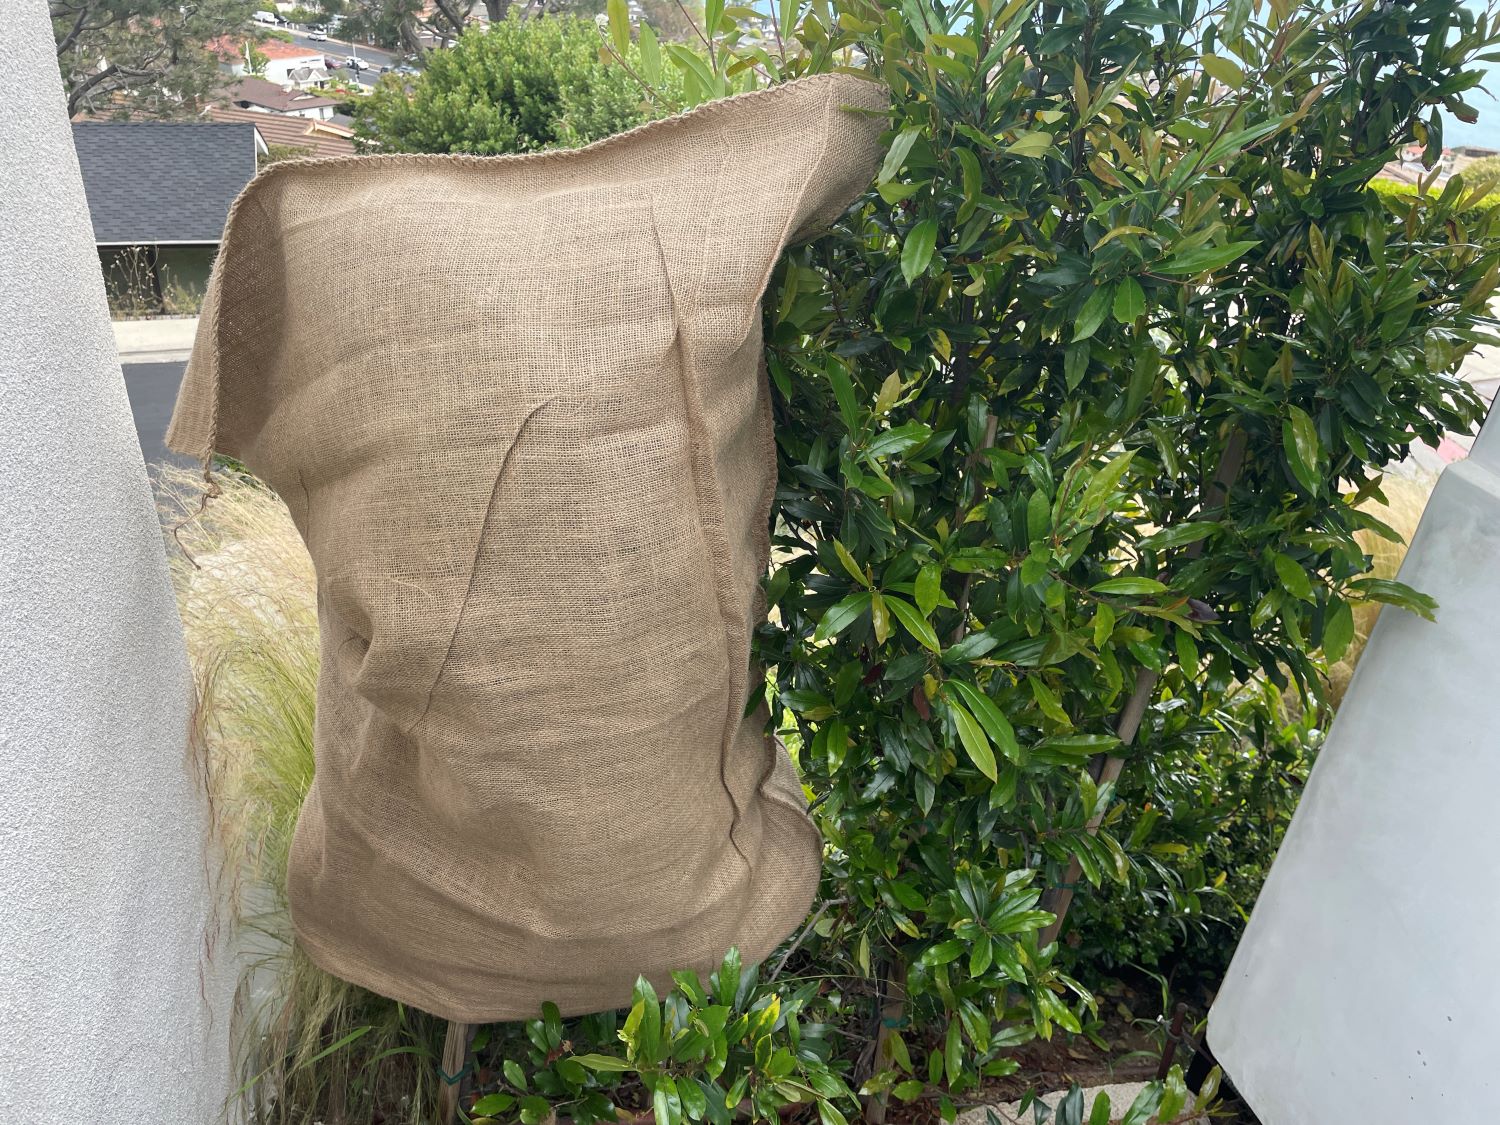 36 x 48 Extra Large Burlap Bags - 100% Natural Jute, Reusable – Sandbaggy